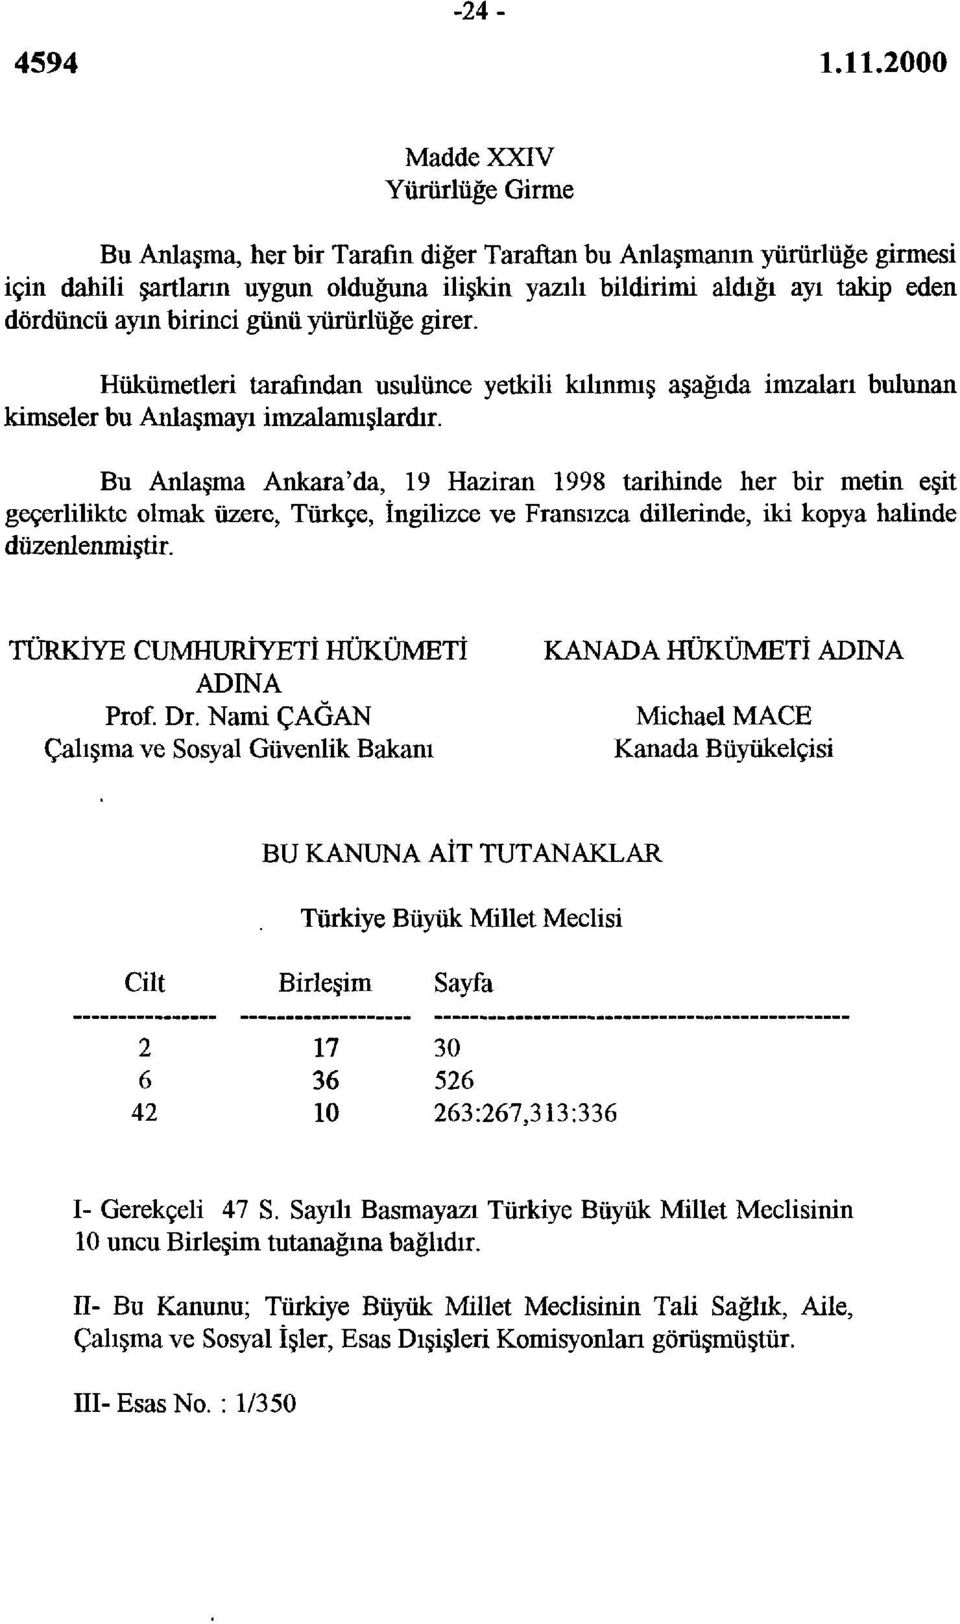 Bu Anlaşma Ankara'da, 19 Haziran 1998 tarihinde her bir metin eşit geçerlilikte olmak üzere, Türkçe, İngilizce ve Fransızca dillerinde, iki kopya halinde düzenlenmiştir.